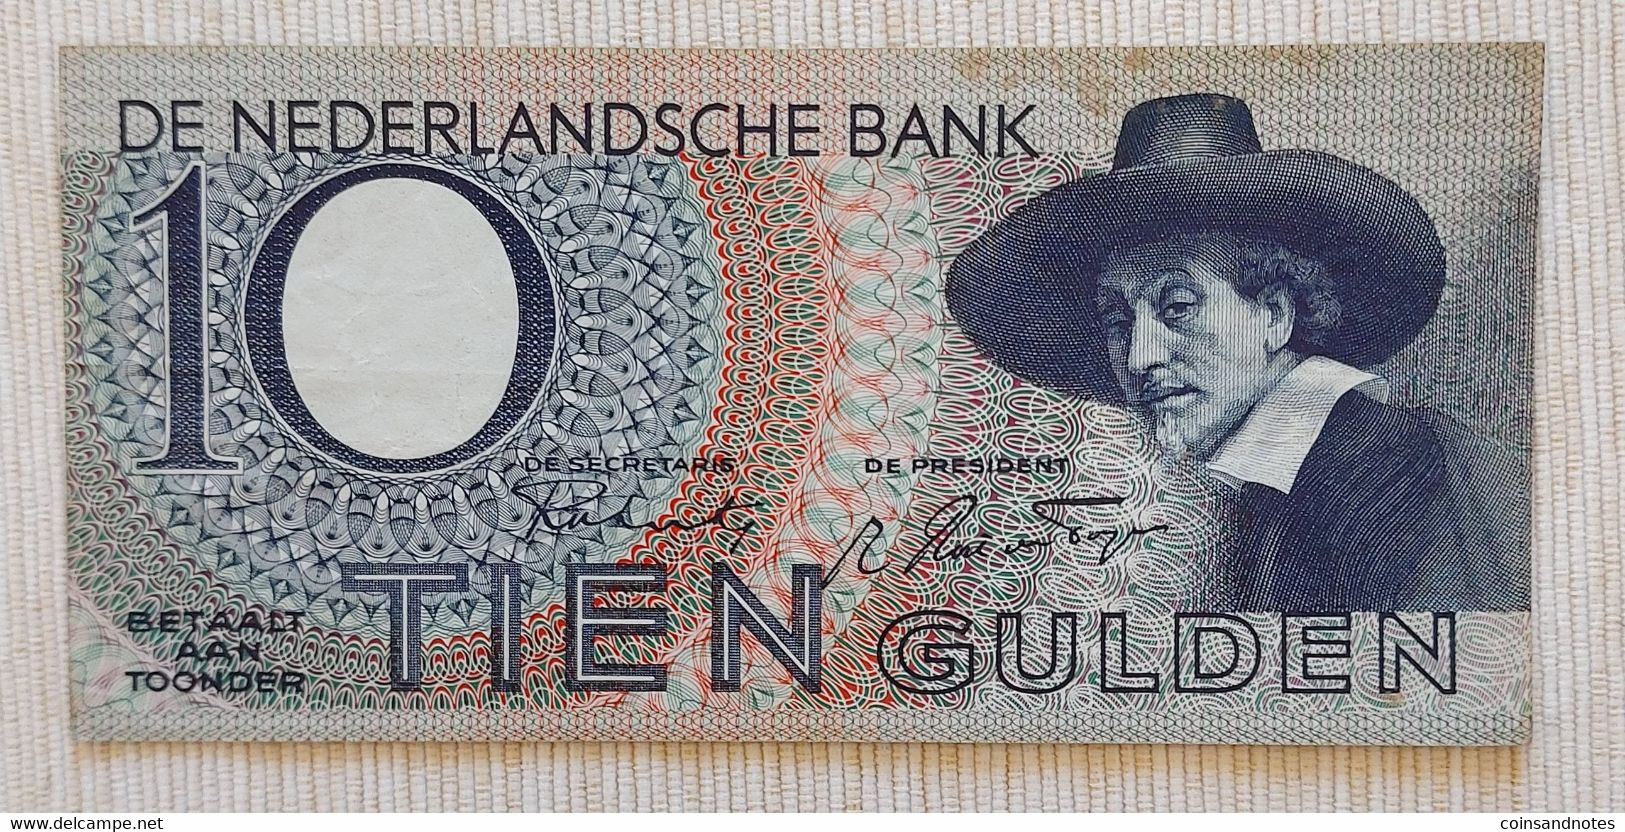 Netherlands 1943 - 10 Gulden ‘Staalmeester’ - No 4 AK 054007 - P# 59 - Near UNC - 10 Florín Holandés (gulden)